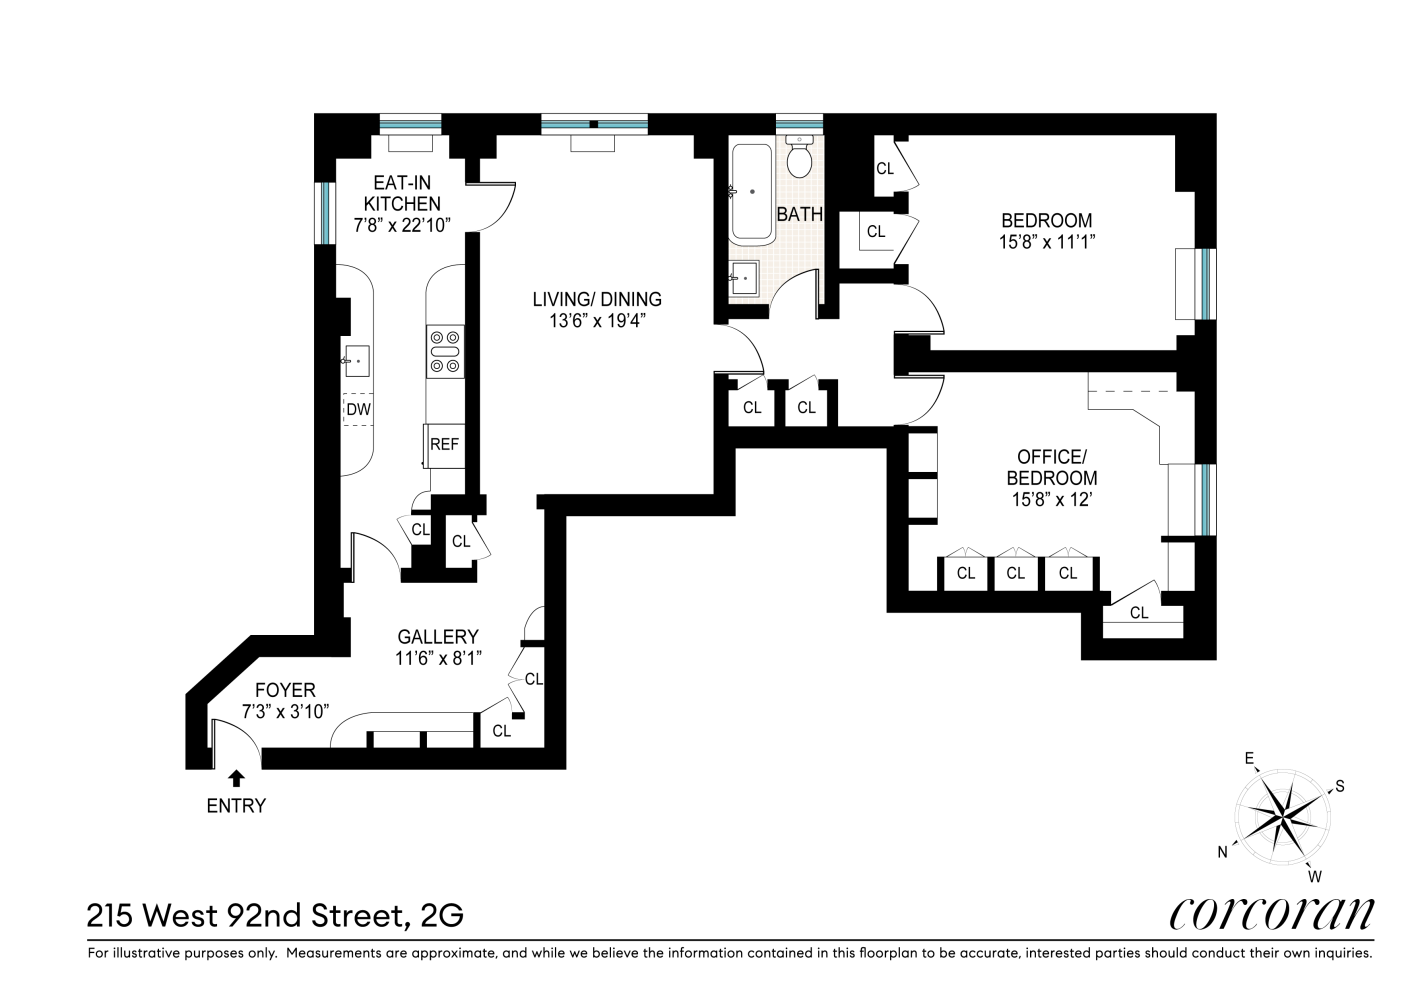 Floorplan for 215 West 92nd Street, 2G